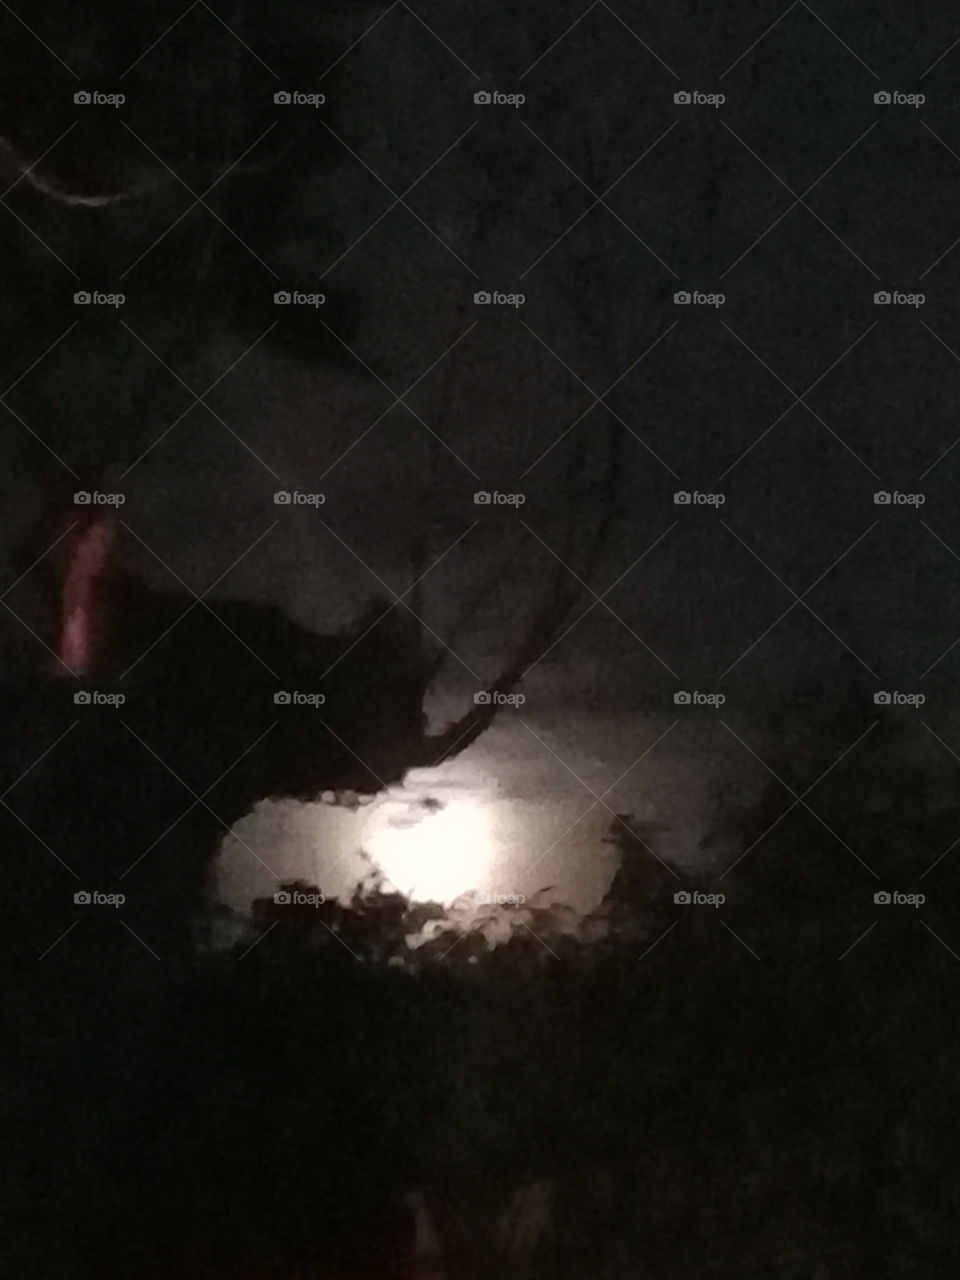 imagen de una luna nueva en una noche cálida de verano asomada entre el follaje verde oscuro de algunos árboles.